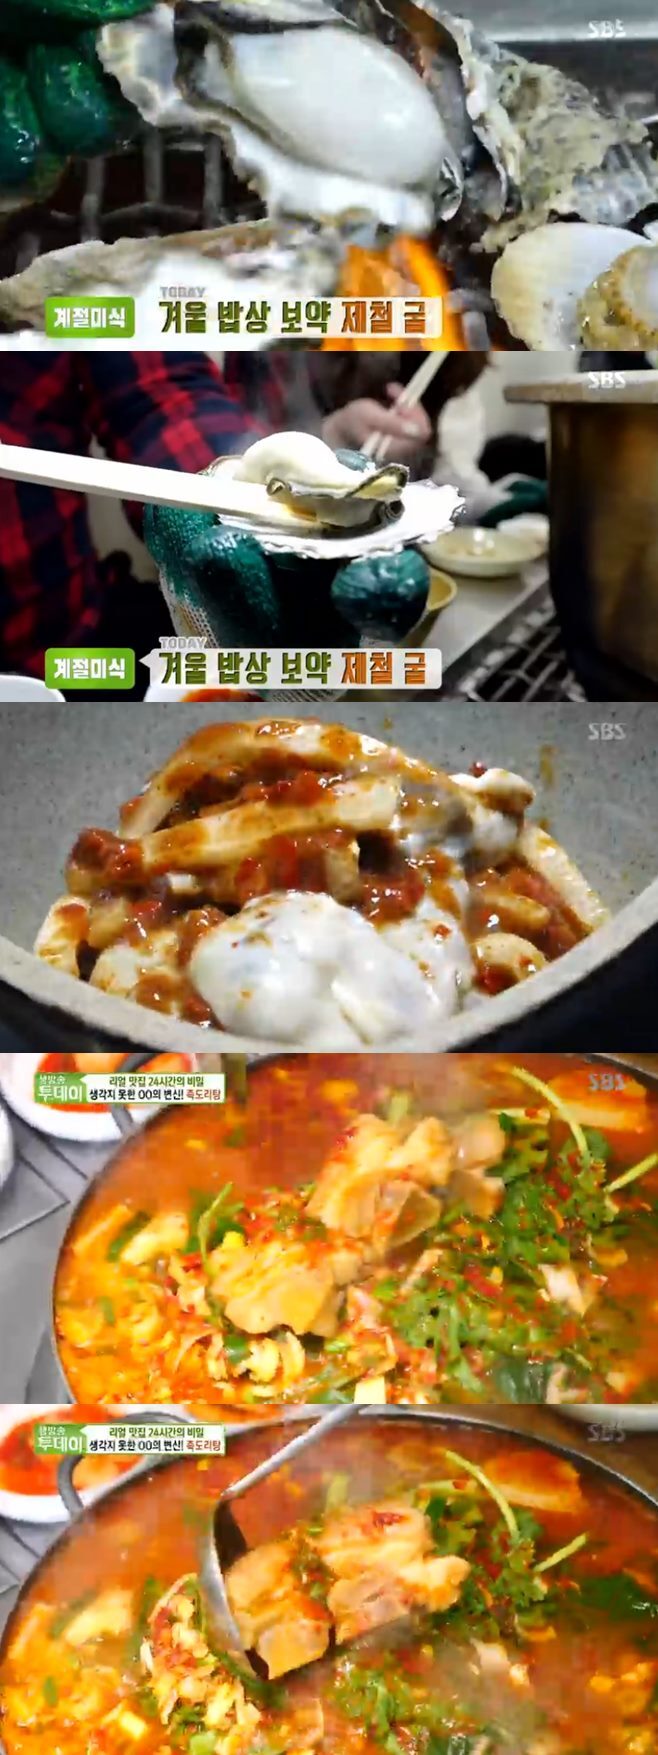 ‘생방송투데이’ 족도리탕vs굴찜·구이·초회·매생이굴탕·어리굴젓 맛집